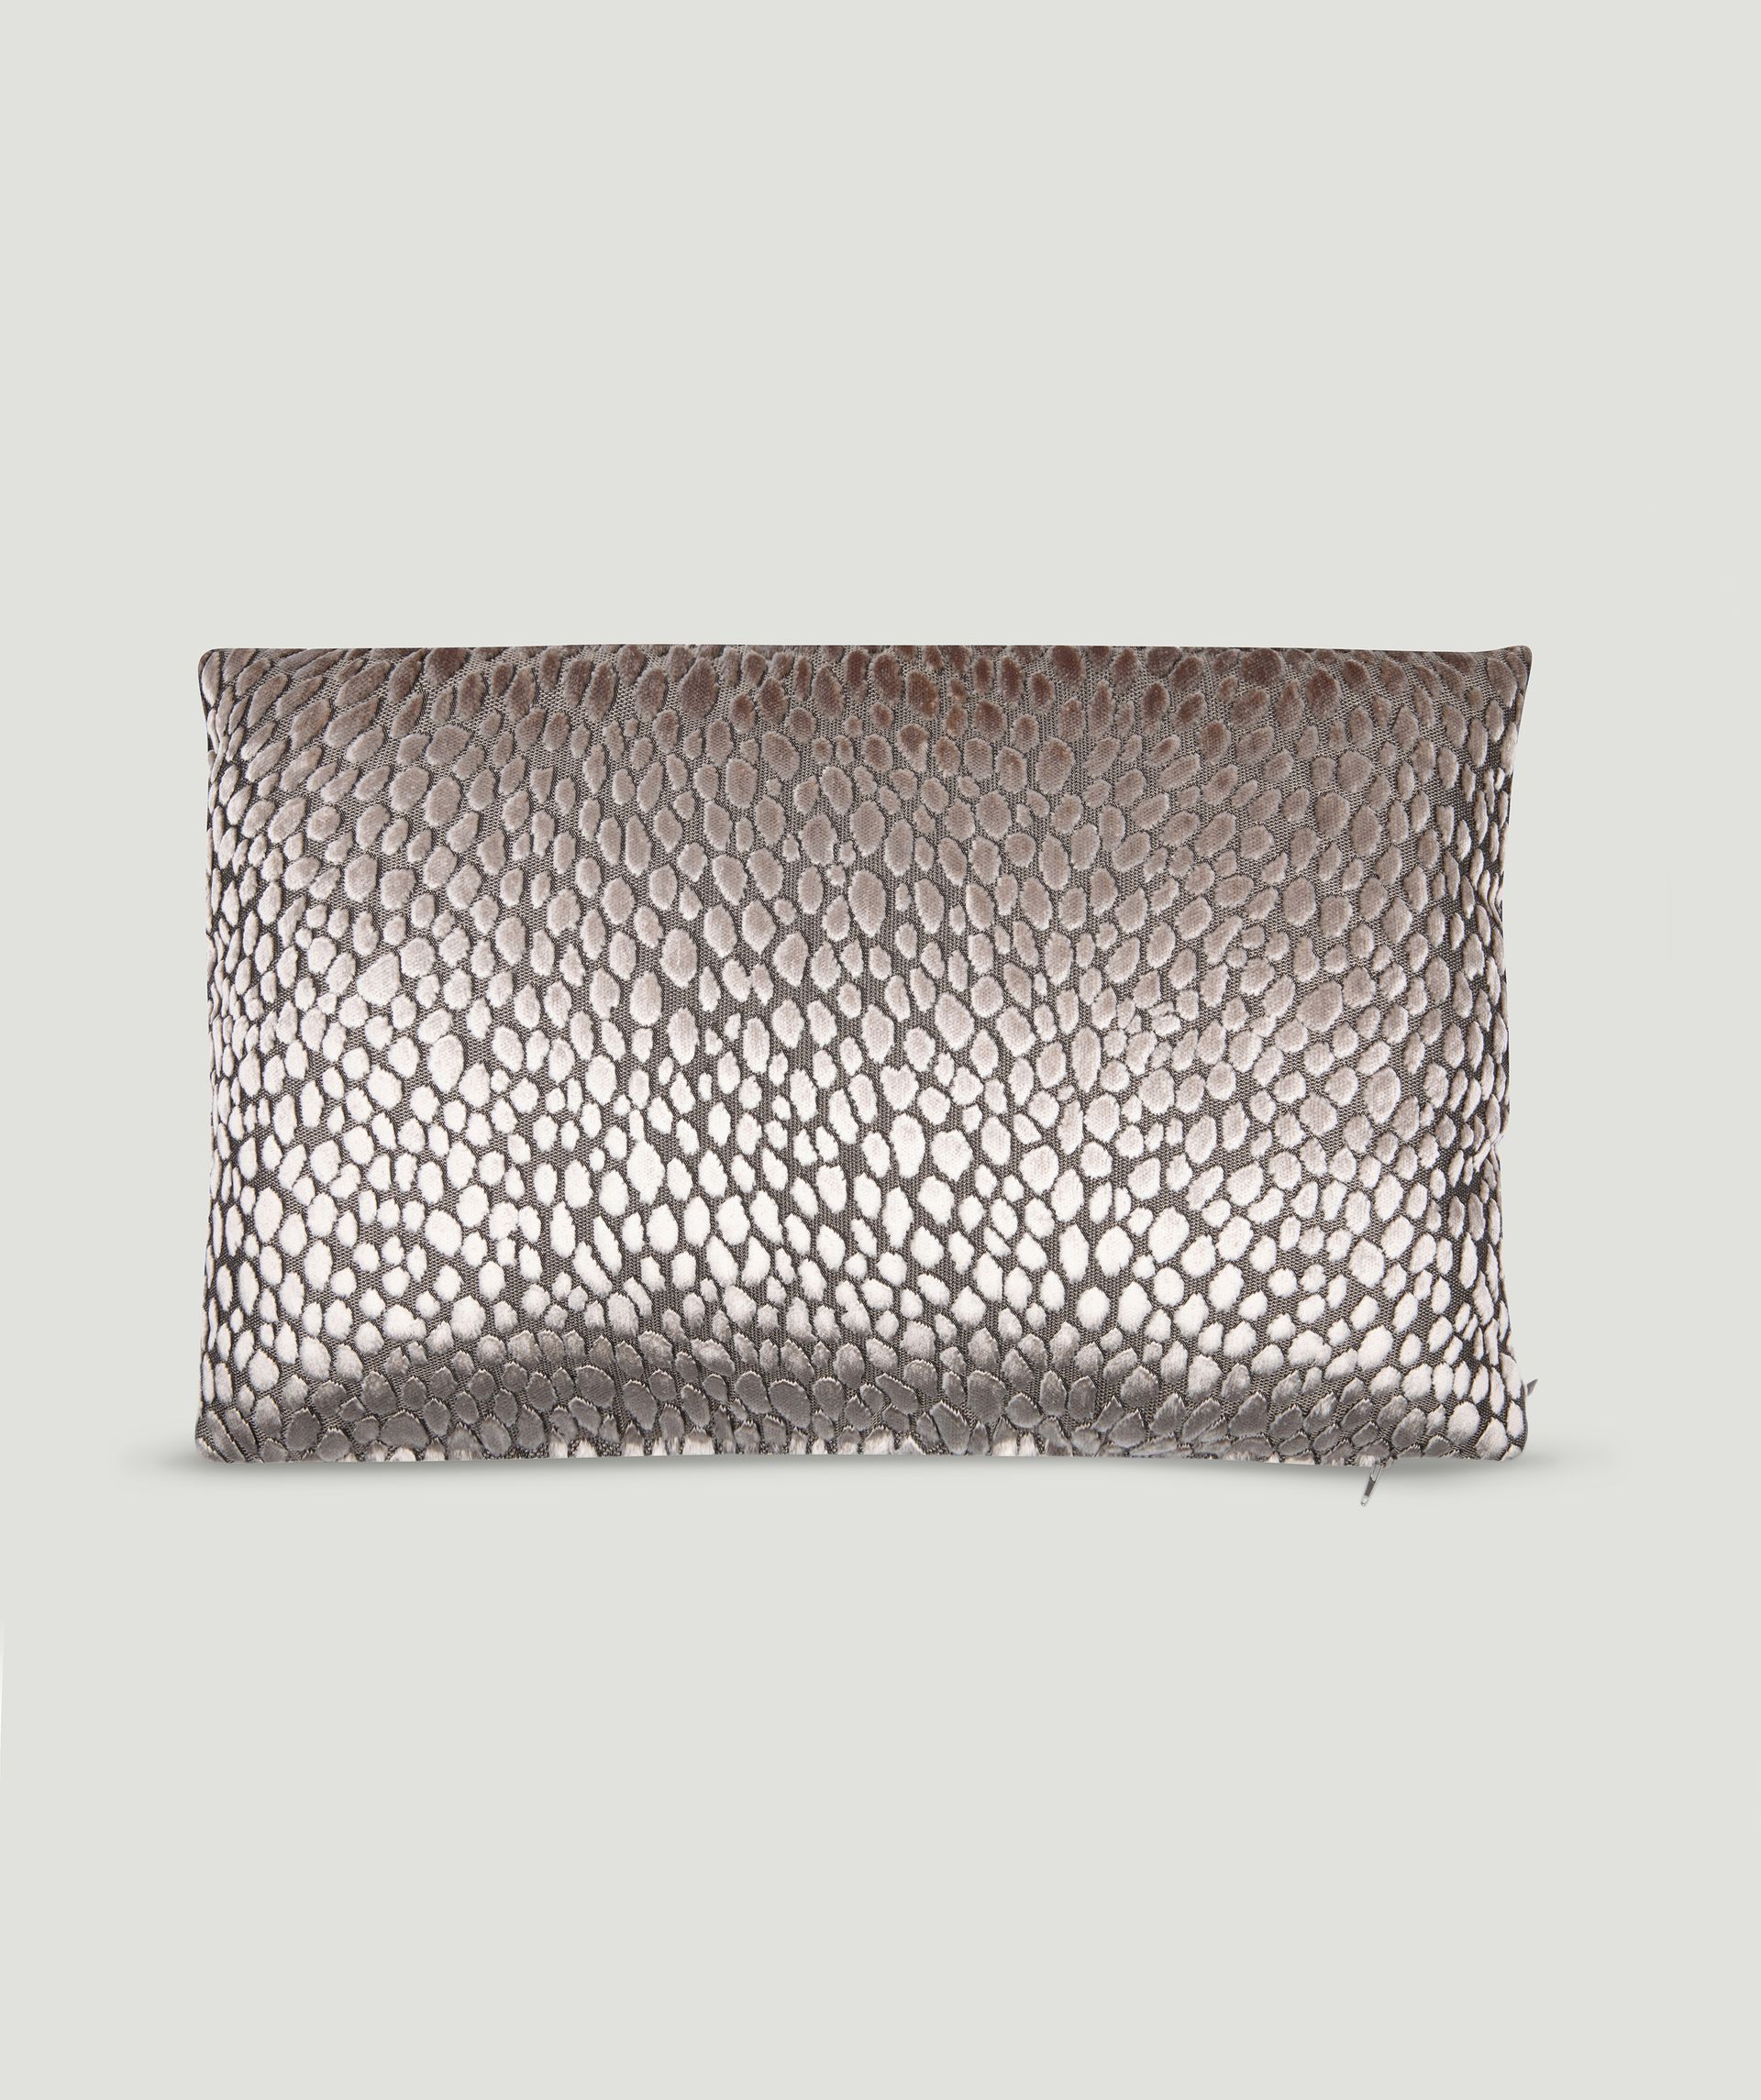 Speranza decorative cushion - CLAUDI